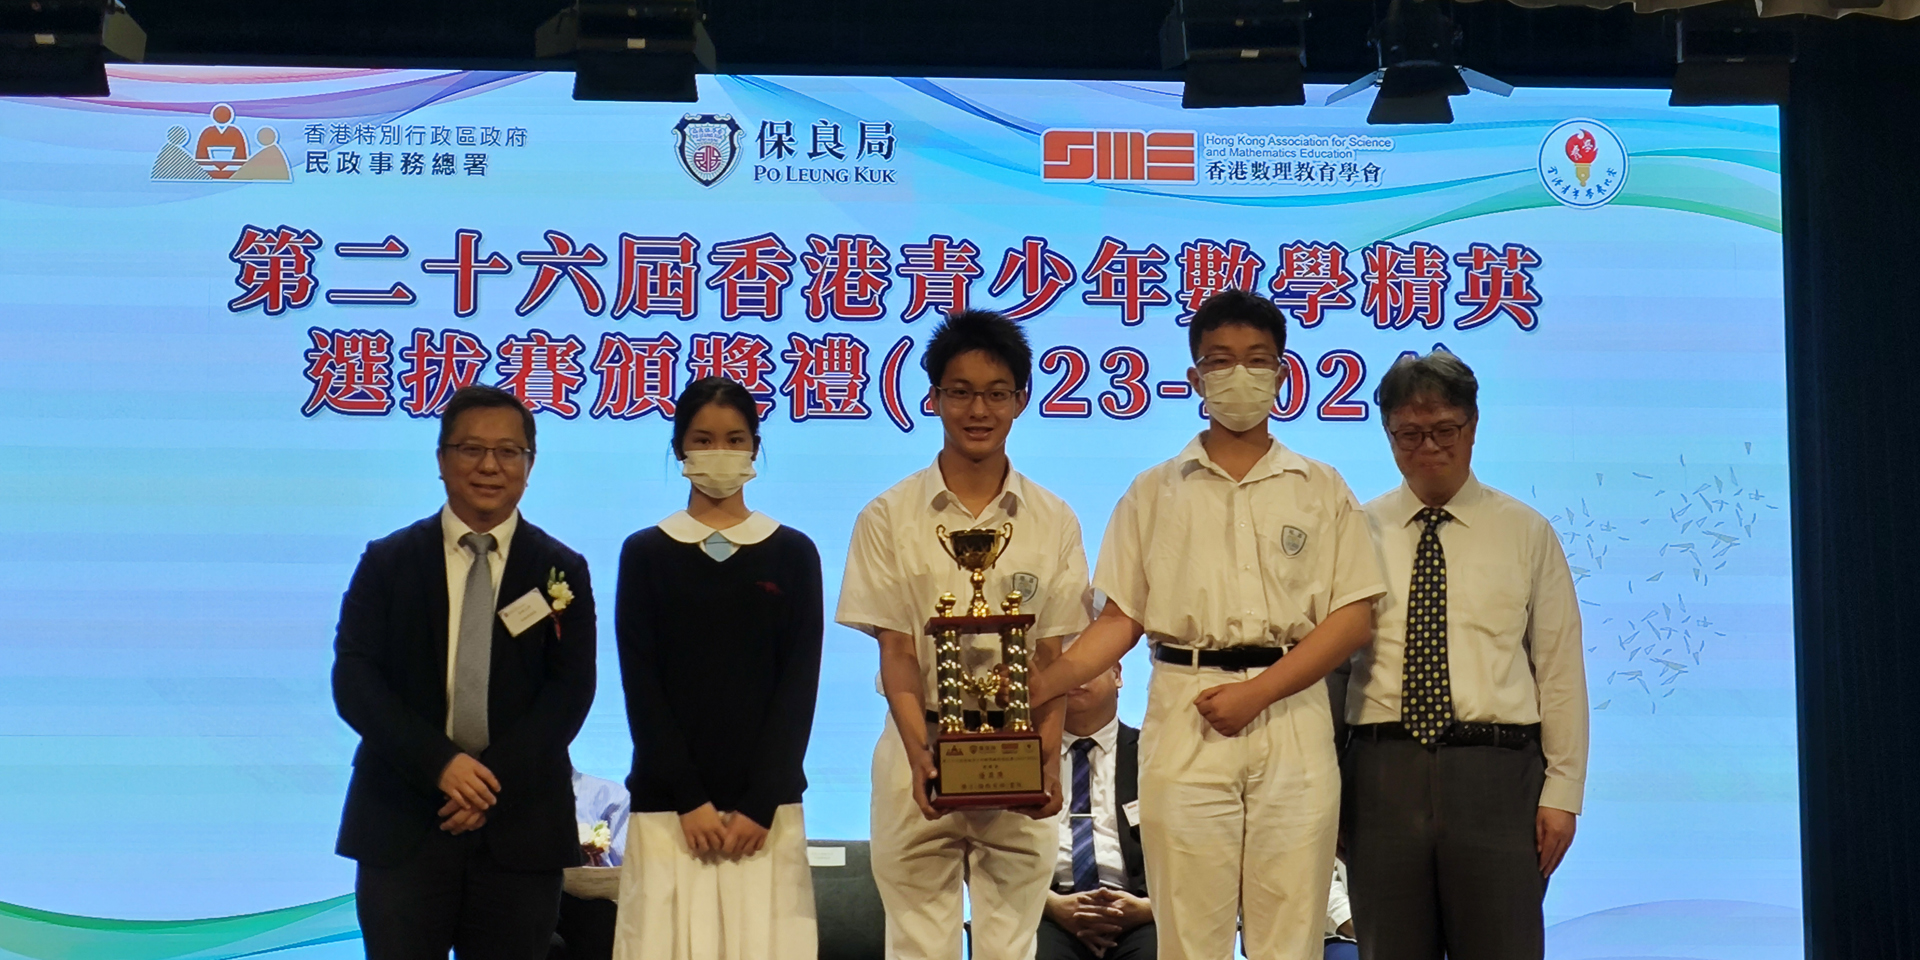 本校同學參加「第二十六屆香港青少年數學精英選拔賽」獲獎